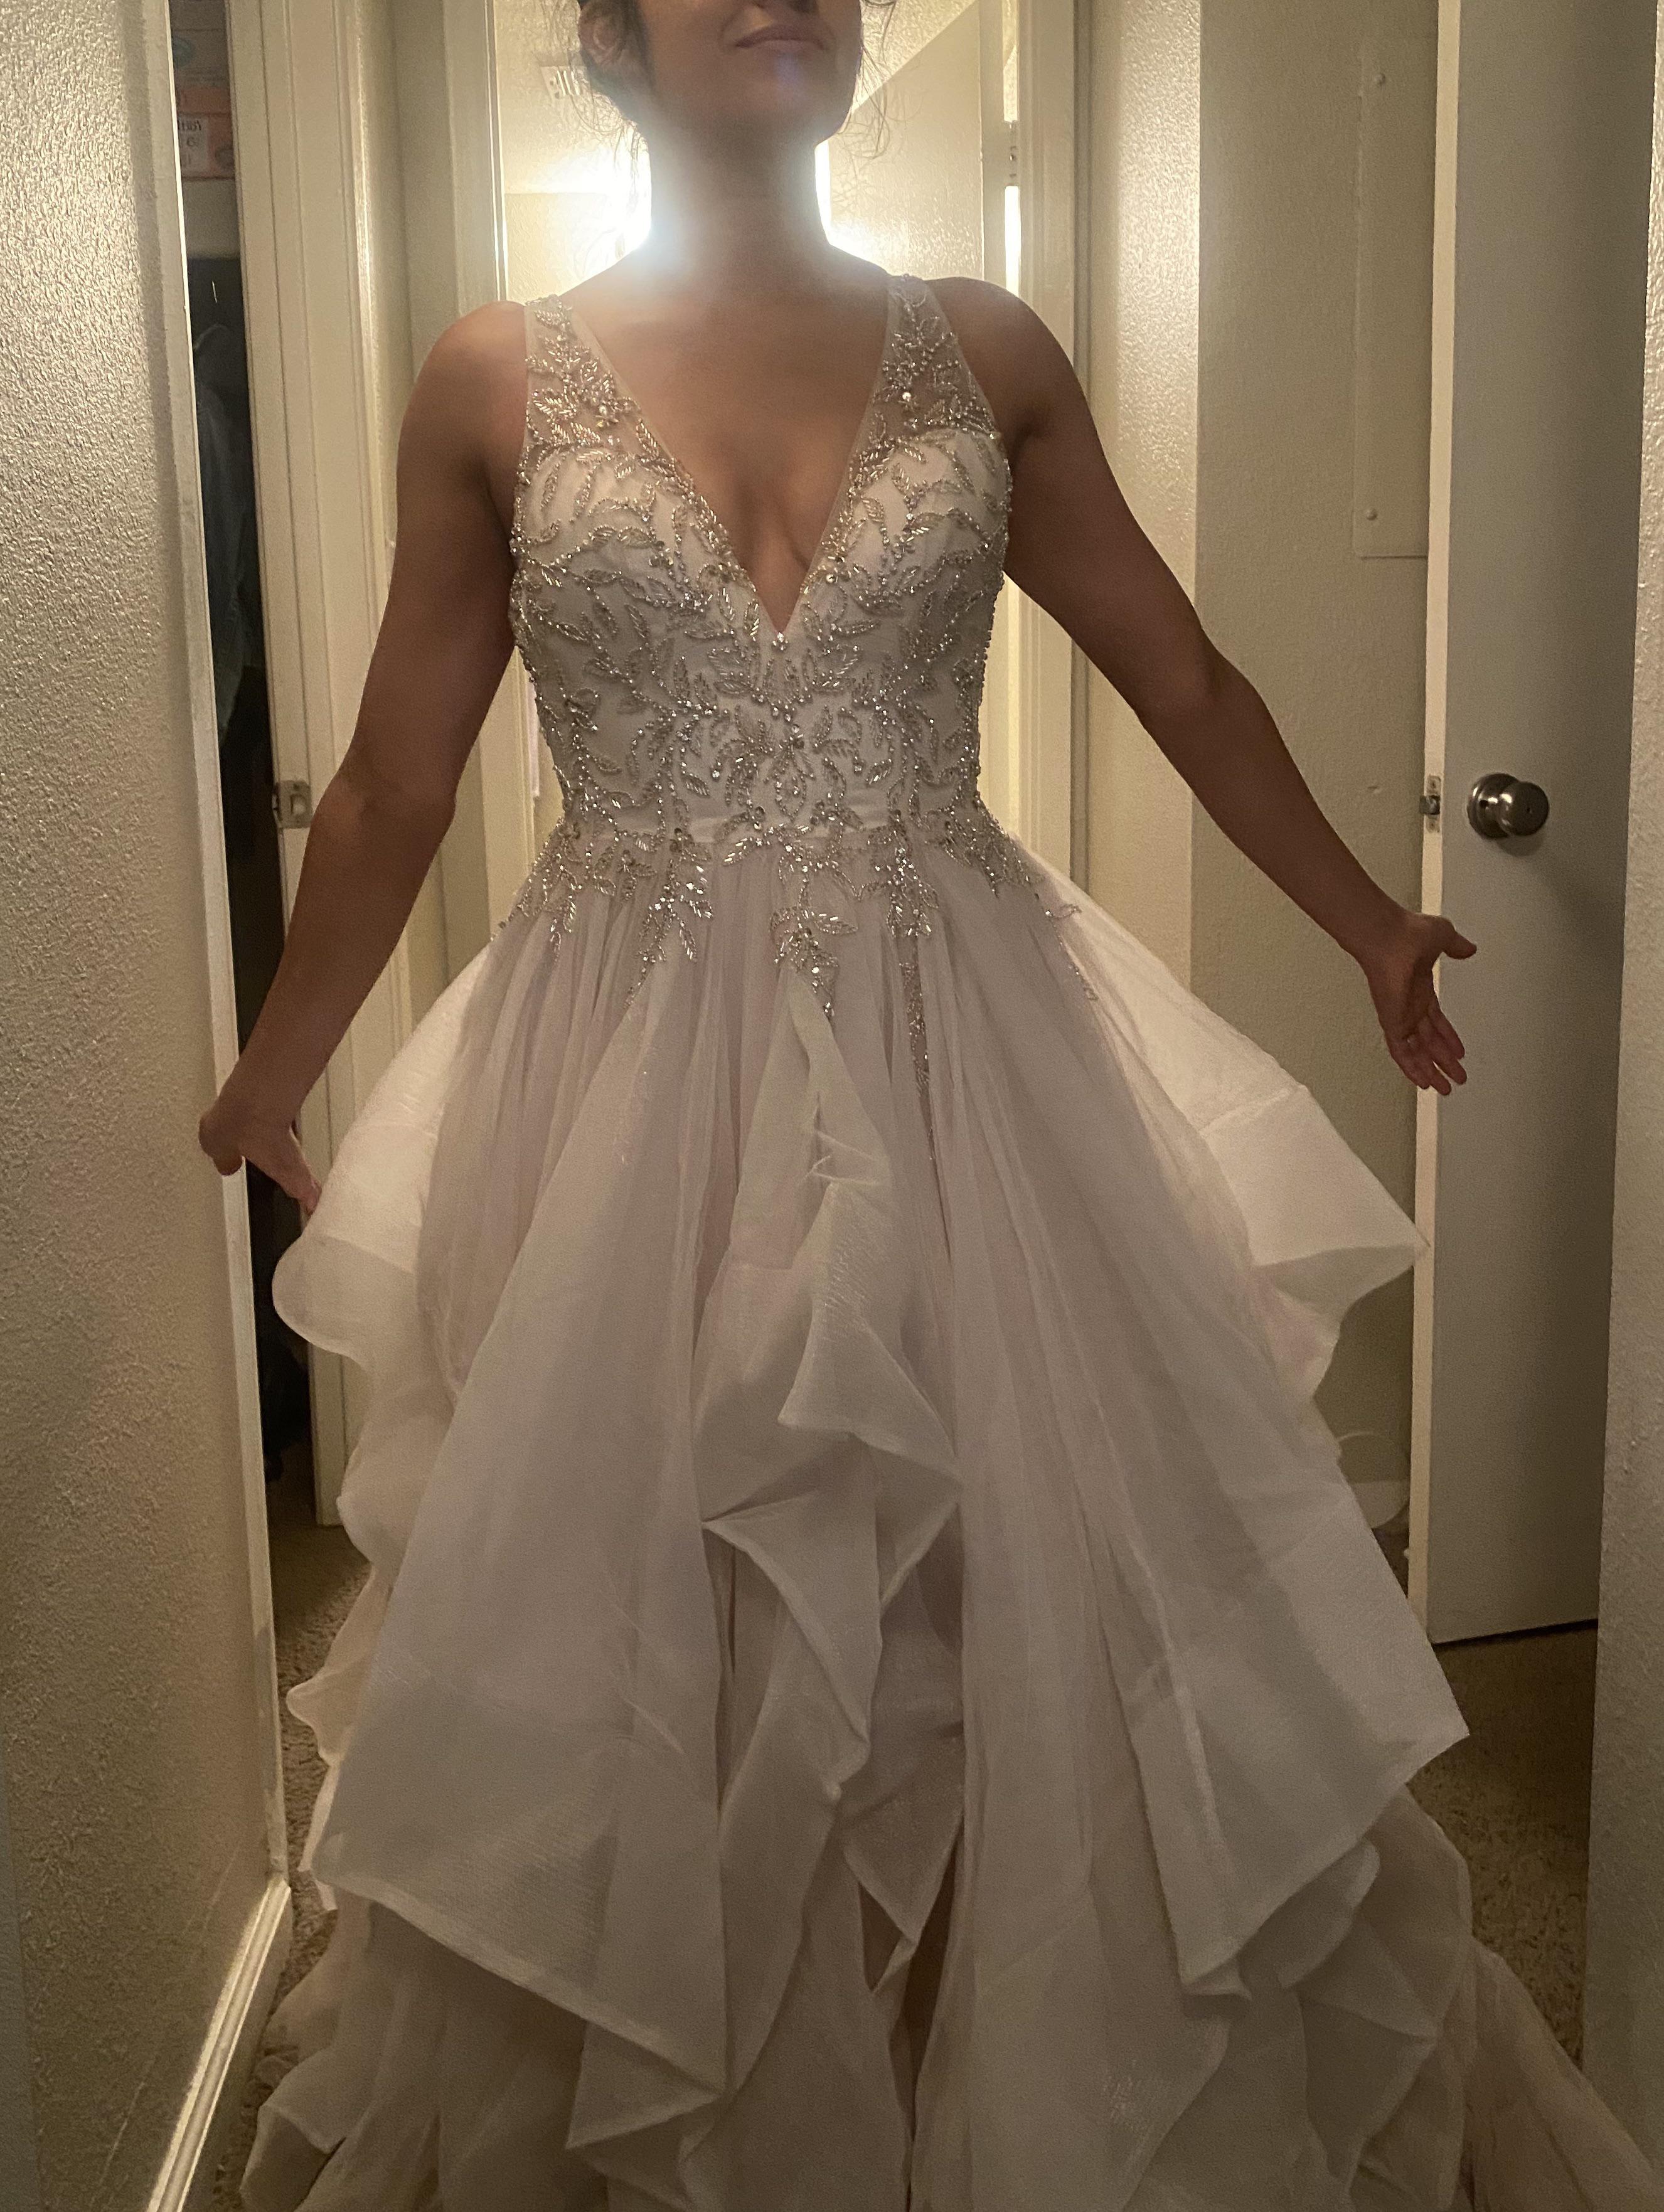 La robe de mariée d'une utilisatrice de Reddit téléchargée sur la plateforme le 22 août 2020 | Source : Reddit/ThriftStoreHauls